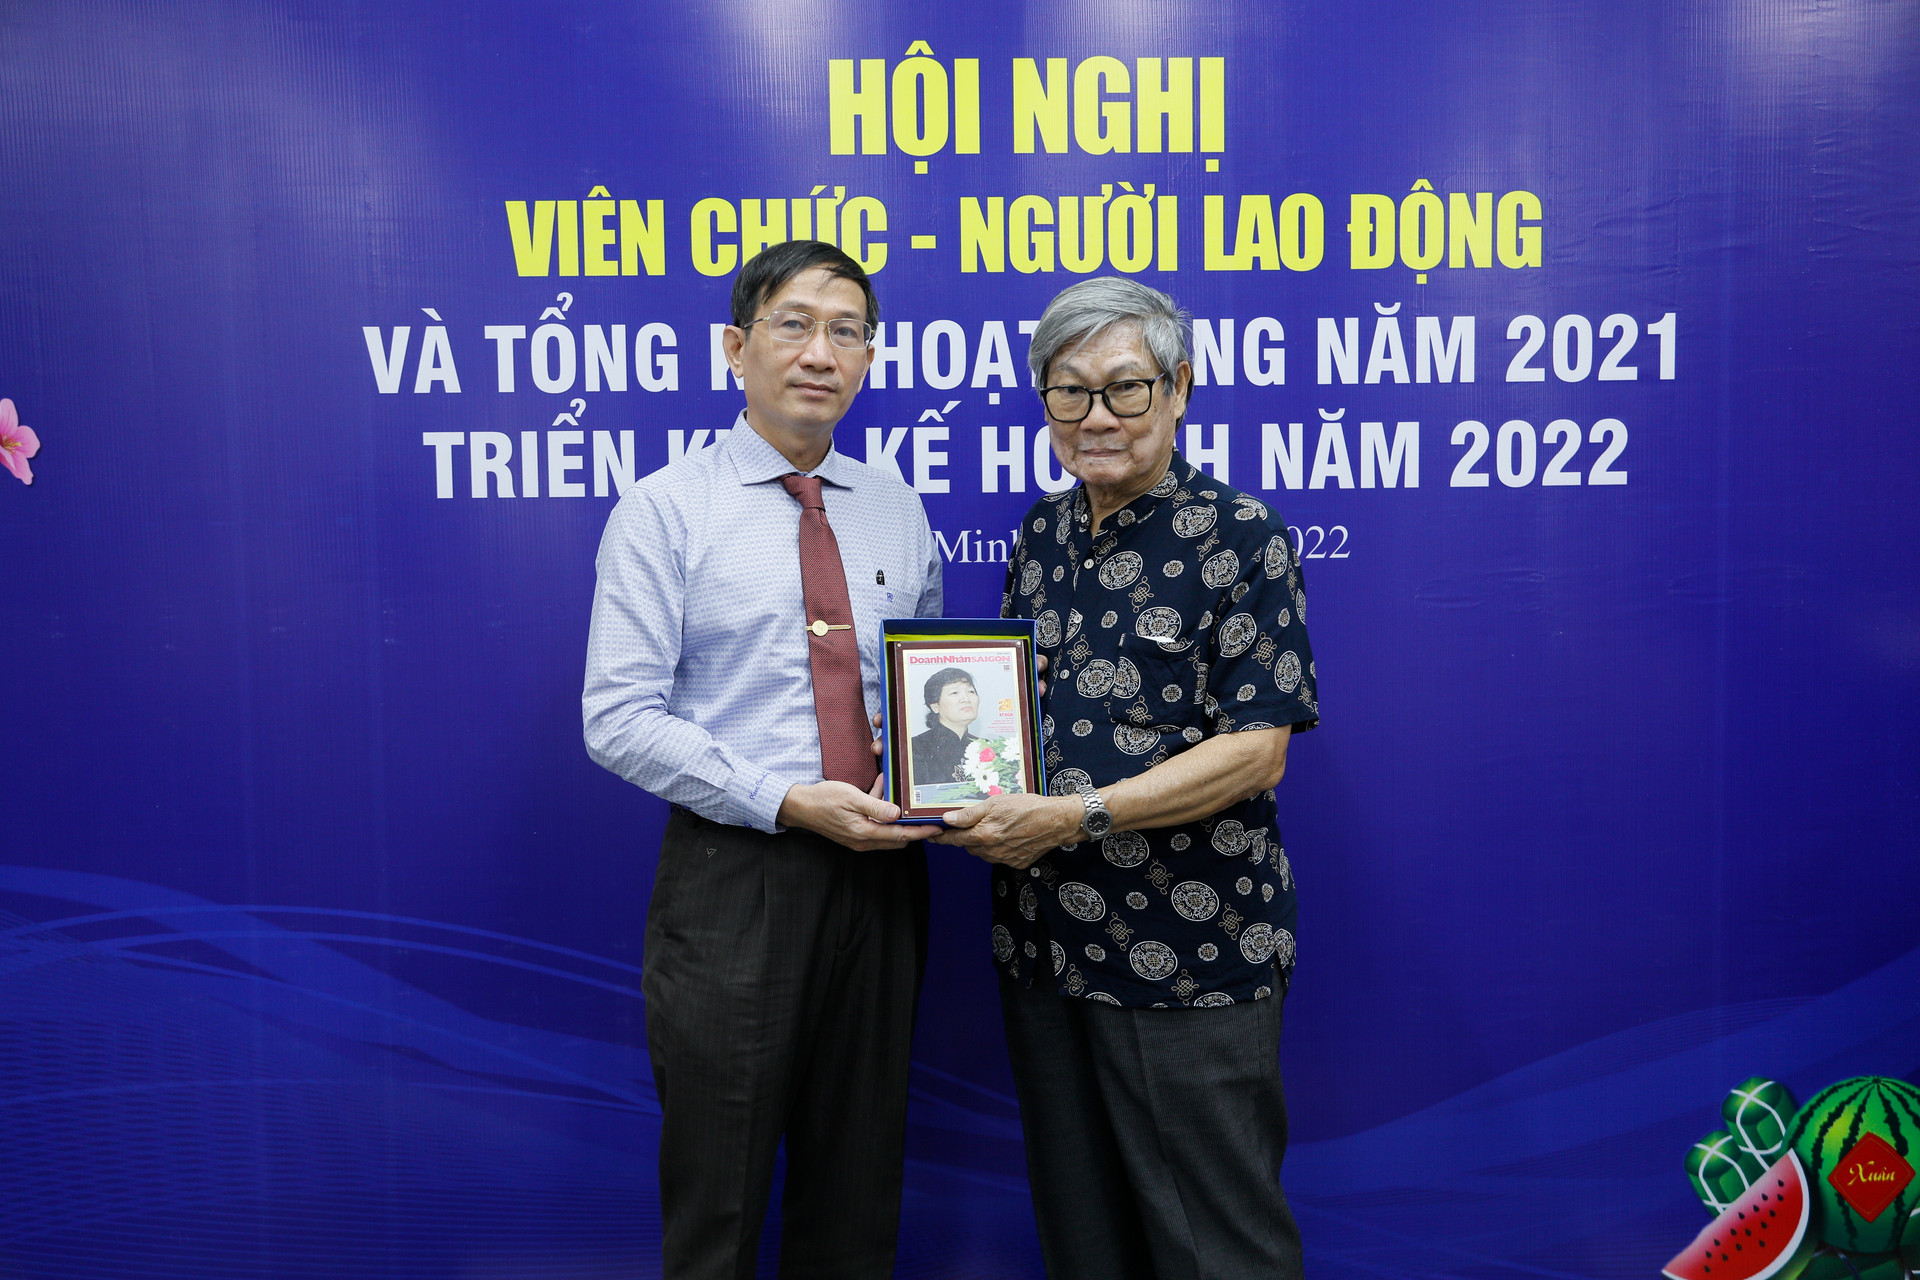 Tạp chí Doanh Nhân Sài Gòn tổng kết hoạt động năm 2021 và công bố kế hoạch năm 2022